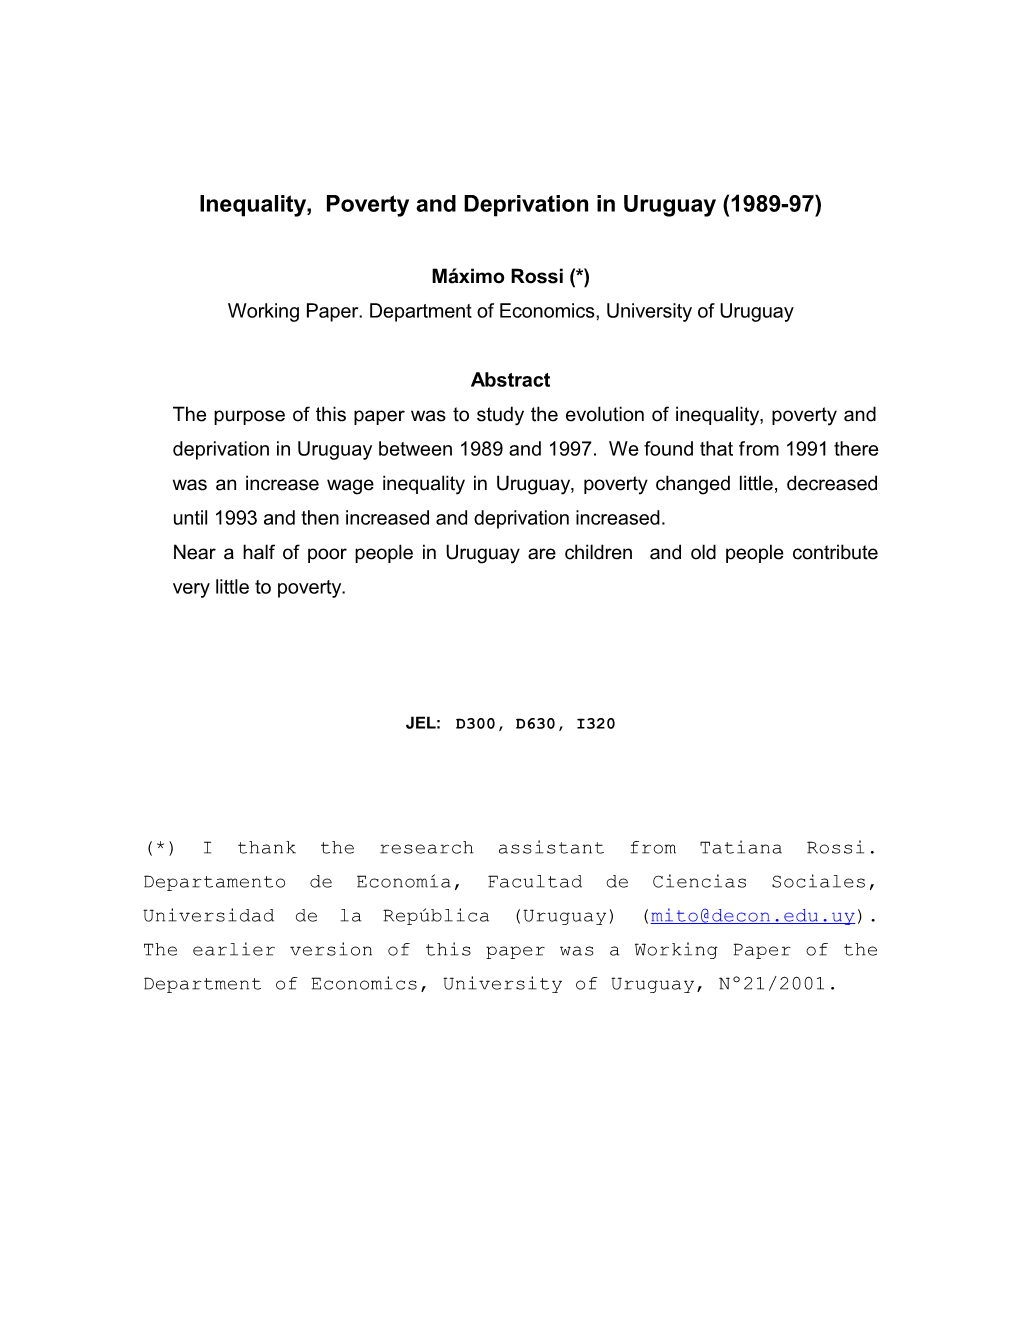 Poverty in Uruguay (1986-97)